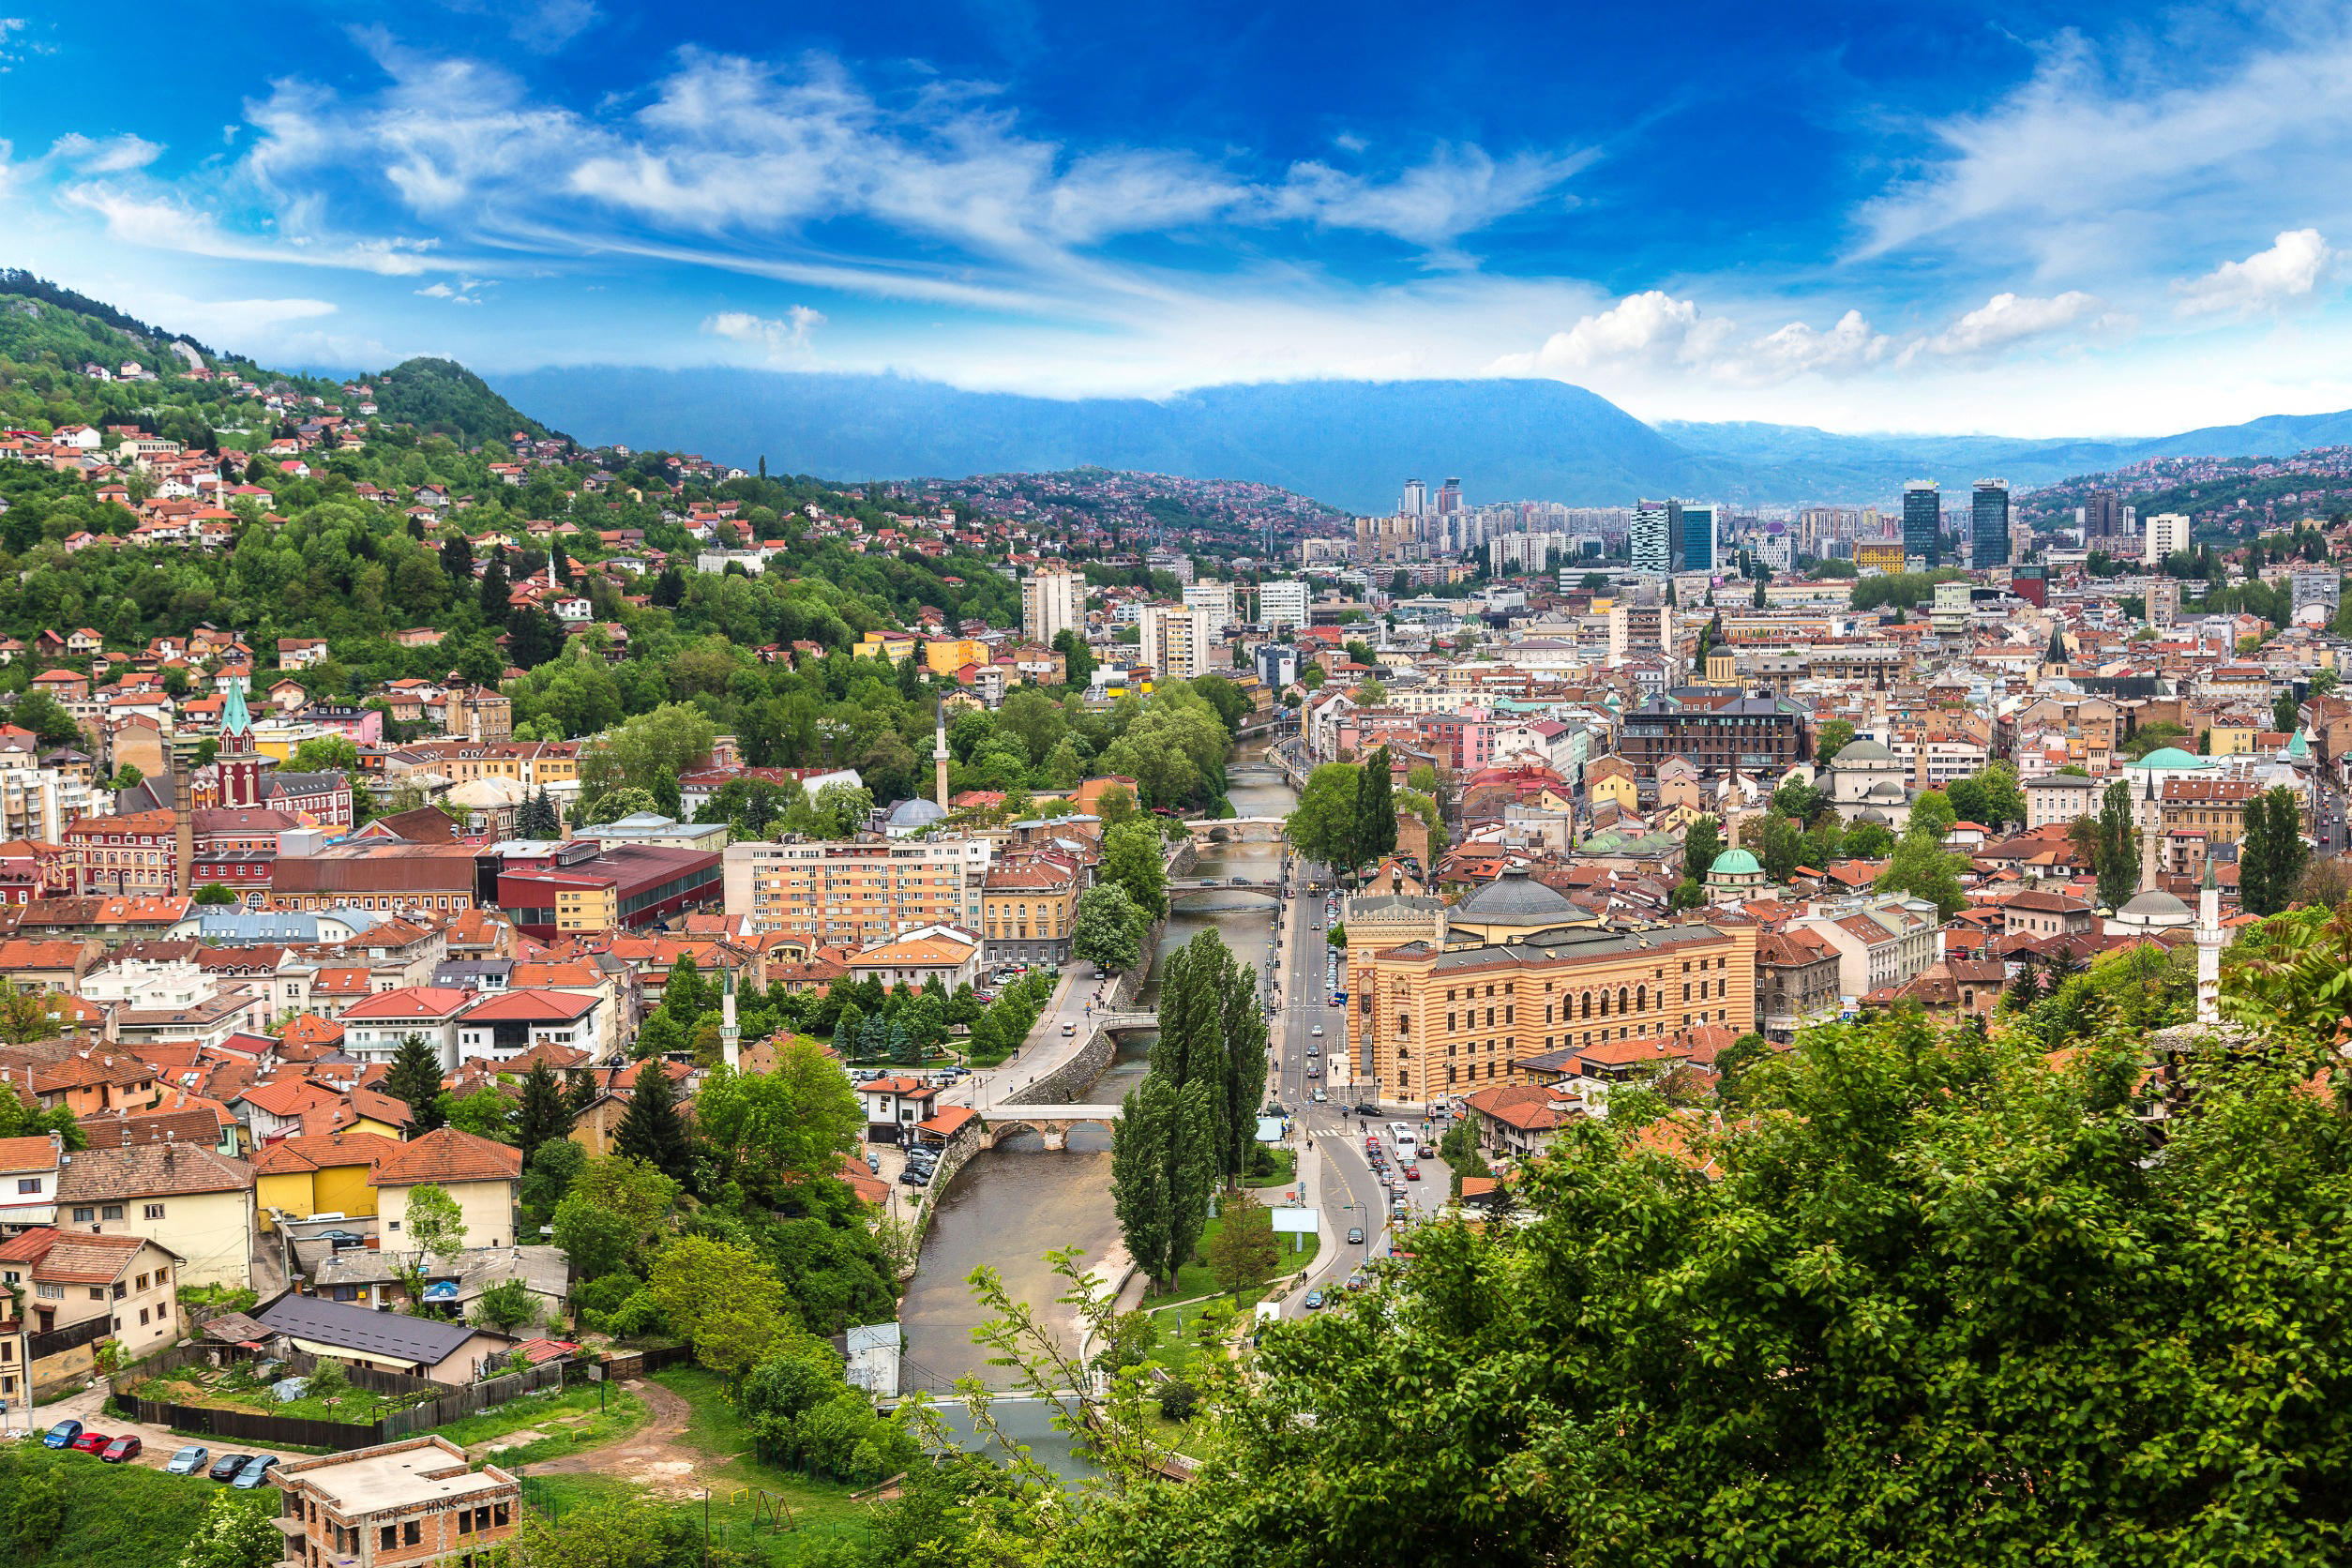 Resa till Sarajevo - Panoramautsikt över en livlig stad med byggnader, flod och gröna kullar under en molnig himmel.